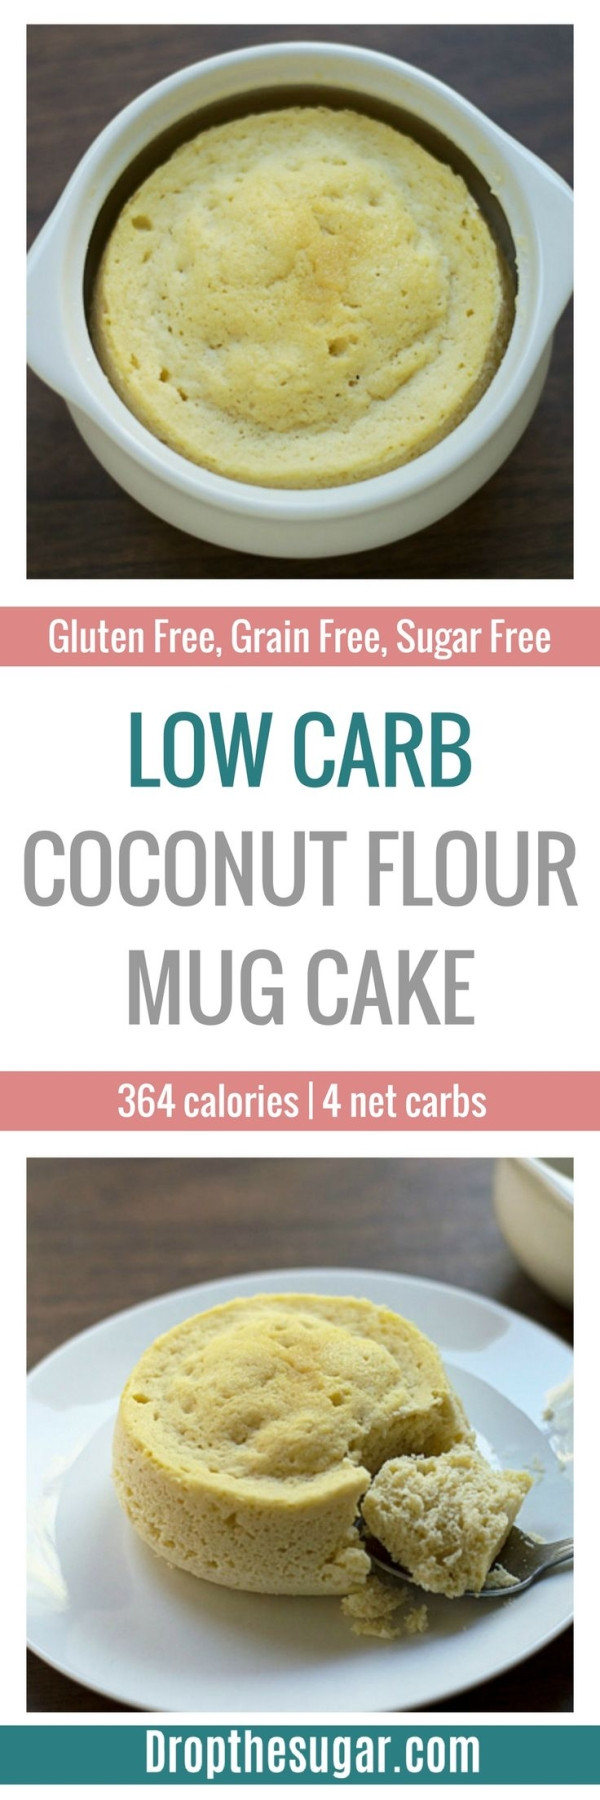 Low Carb Mug Cake Coconut Flour
 Low Carb Coconut Flour Mug Cake